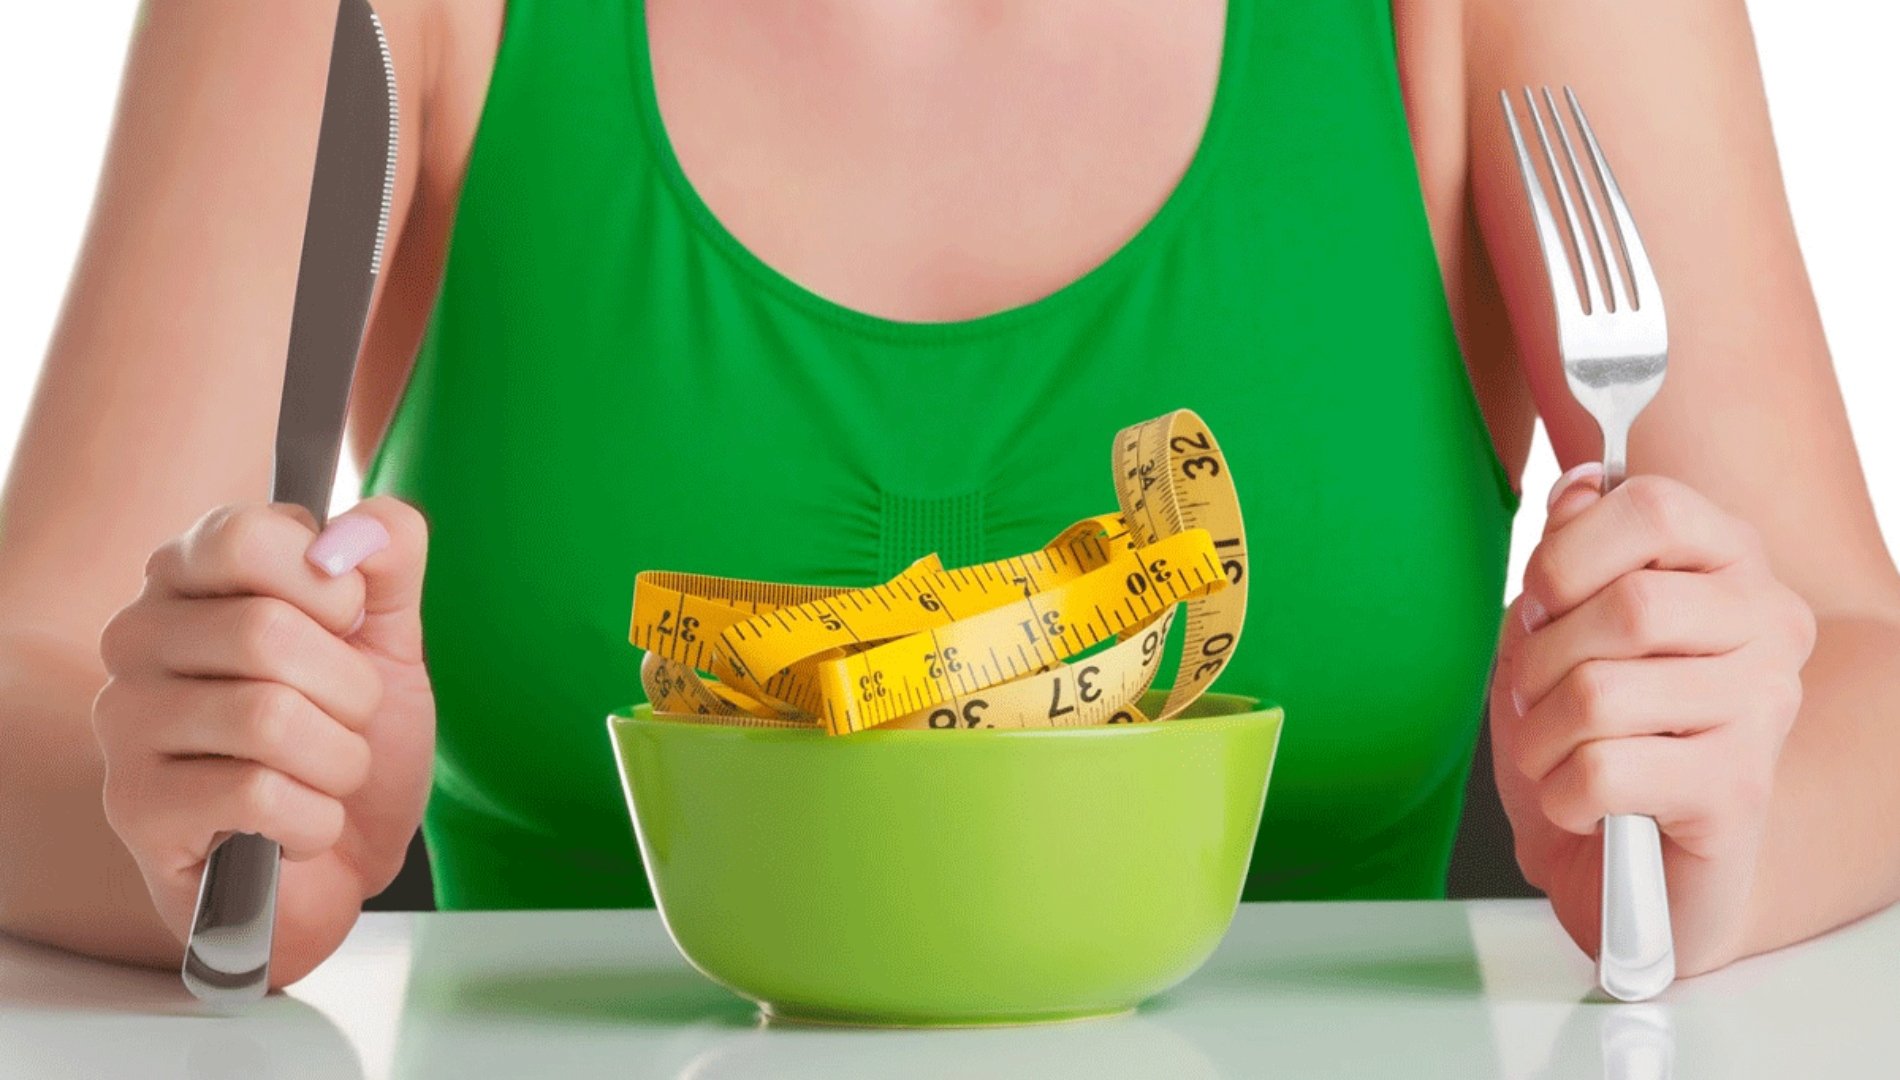 الوزن الزائد قد يرتبط بخطر صحي ينبغي الحذر منه!